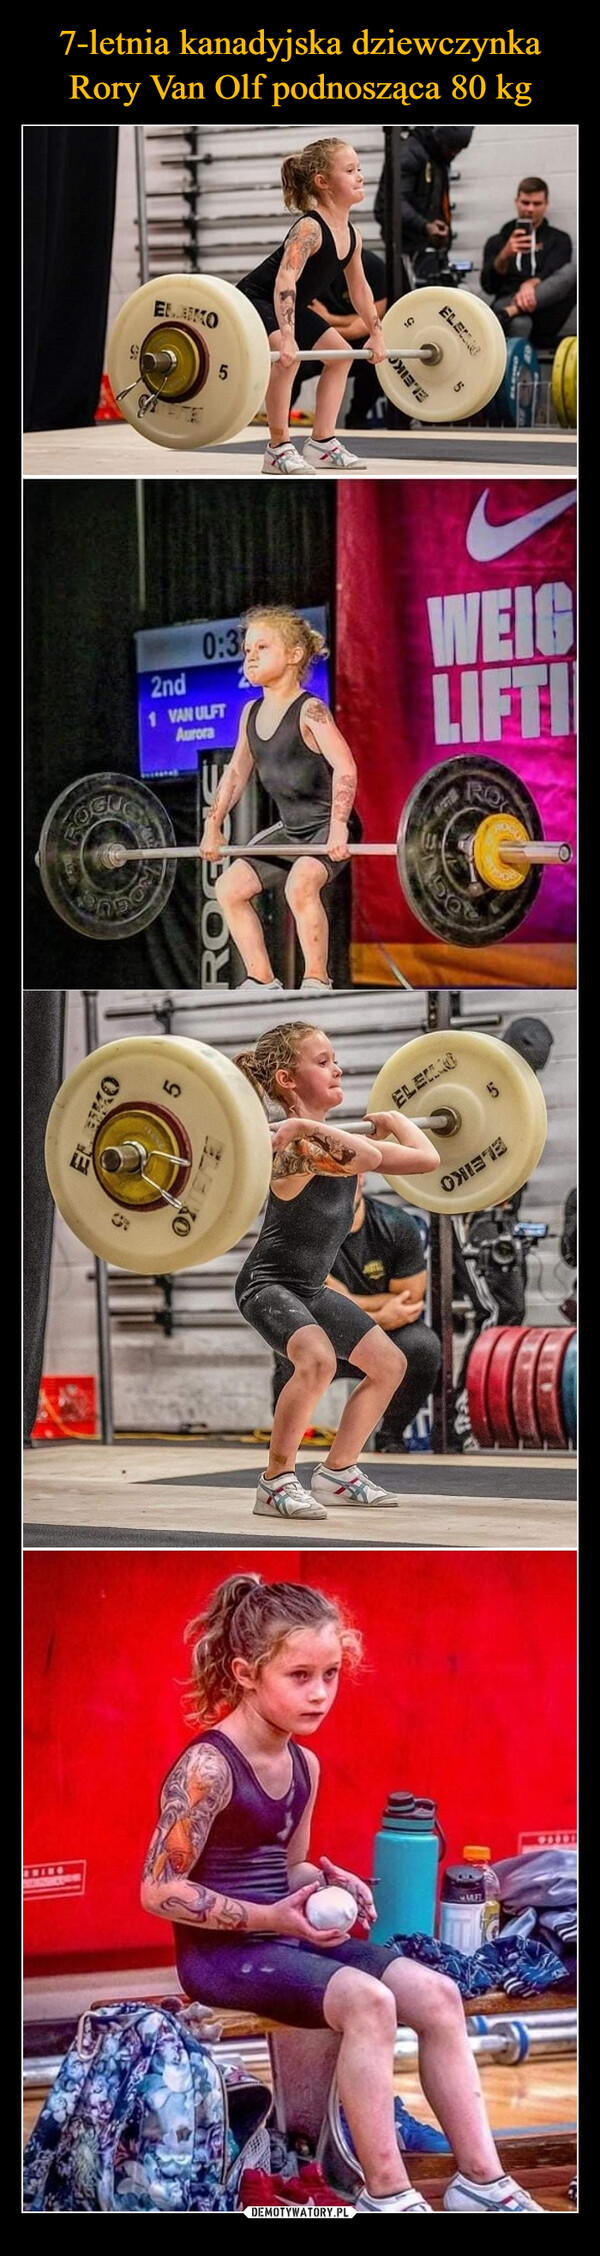 7-letnia kanadyjska dziewczynka Rory Van Olf podnosząca 80 kg